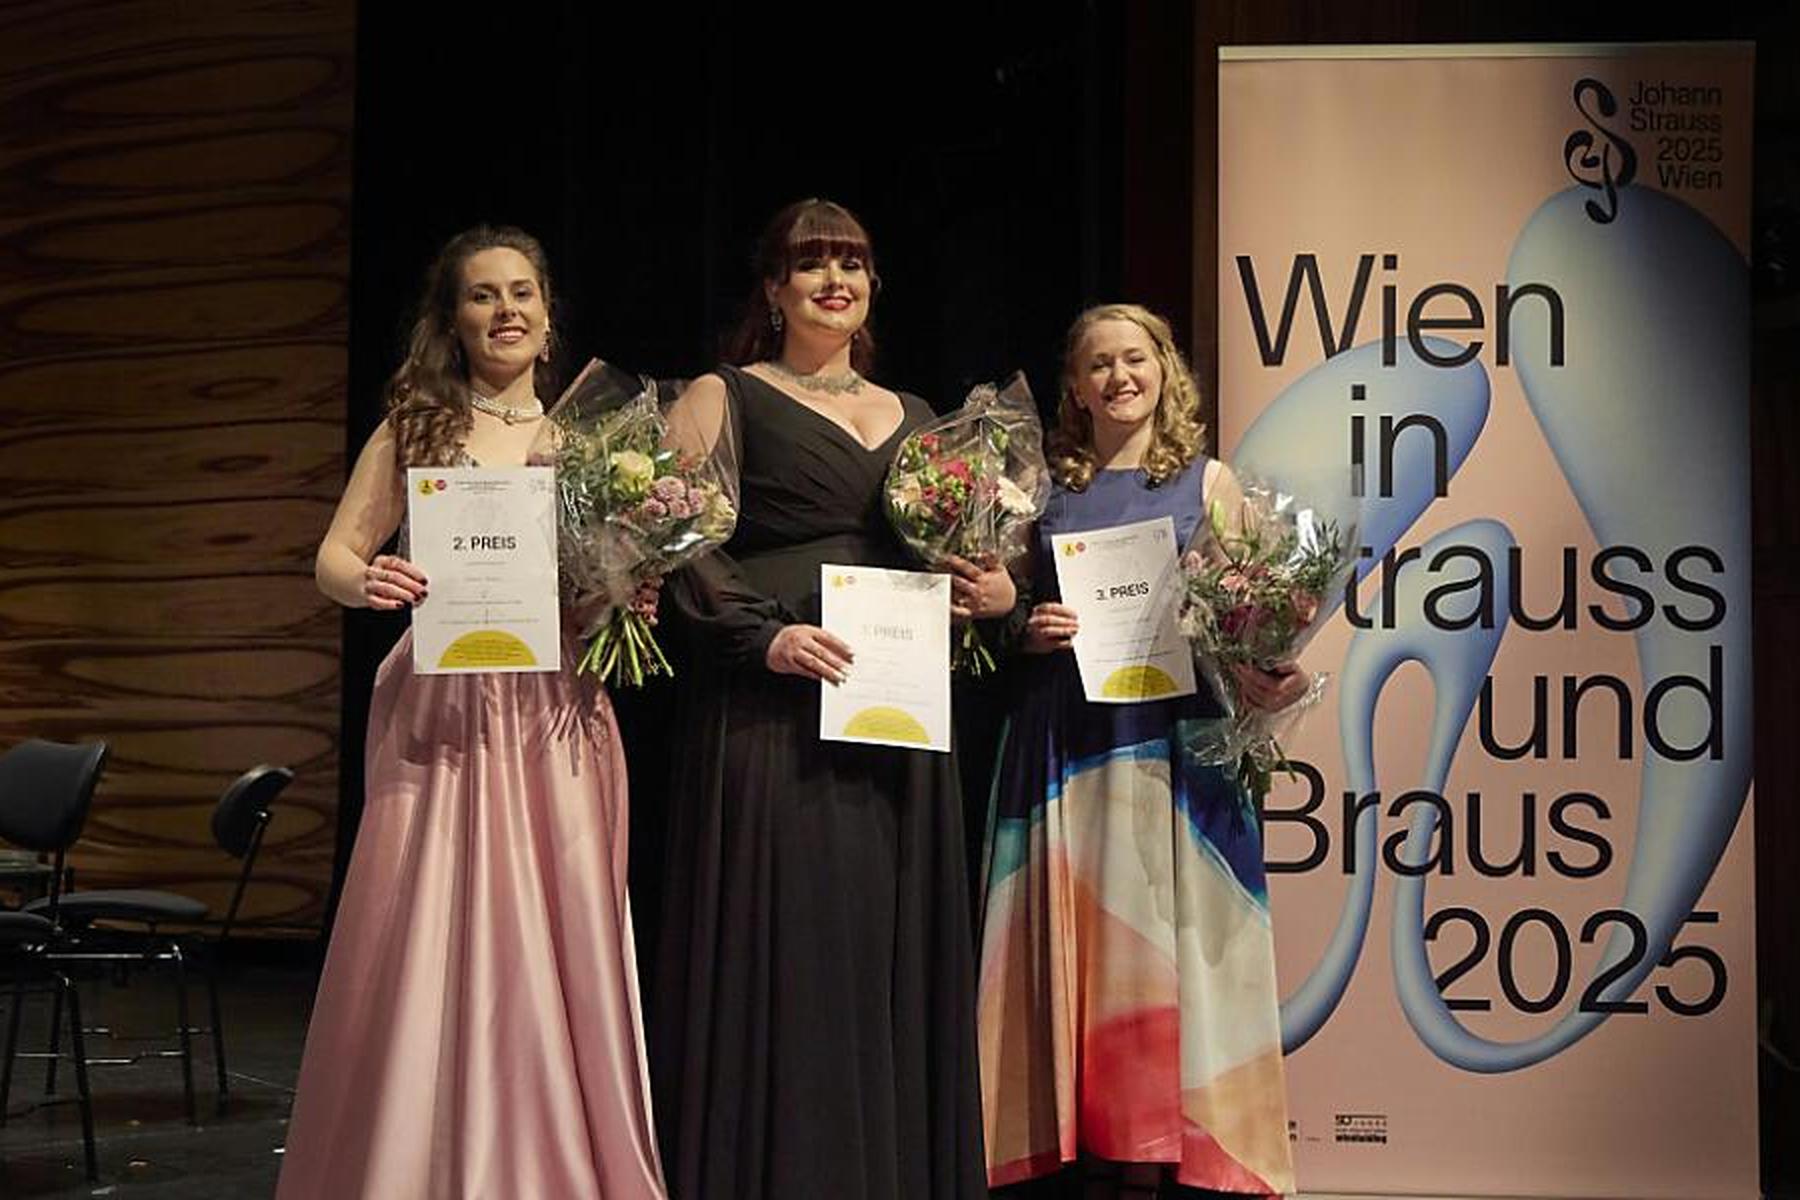 Wien: Drei Gewinnerinnen bei Strauß-Gesangswettbewerb gekürt